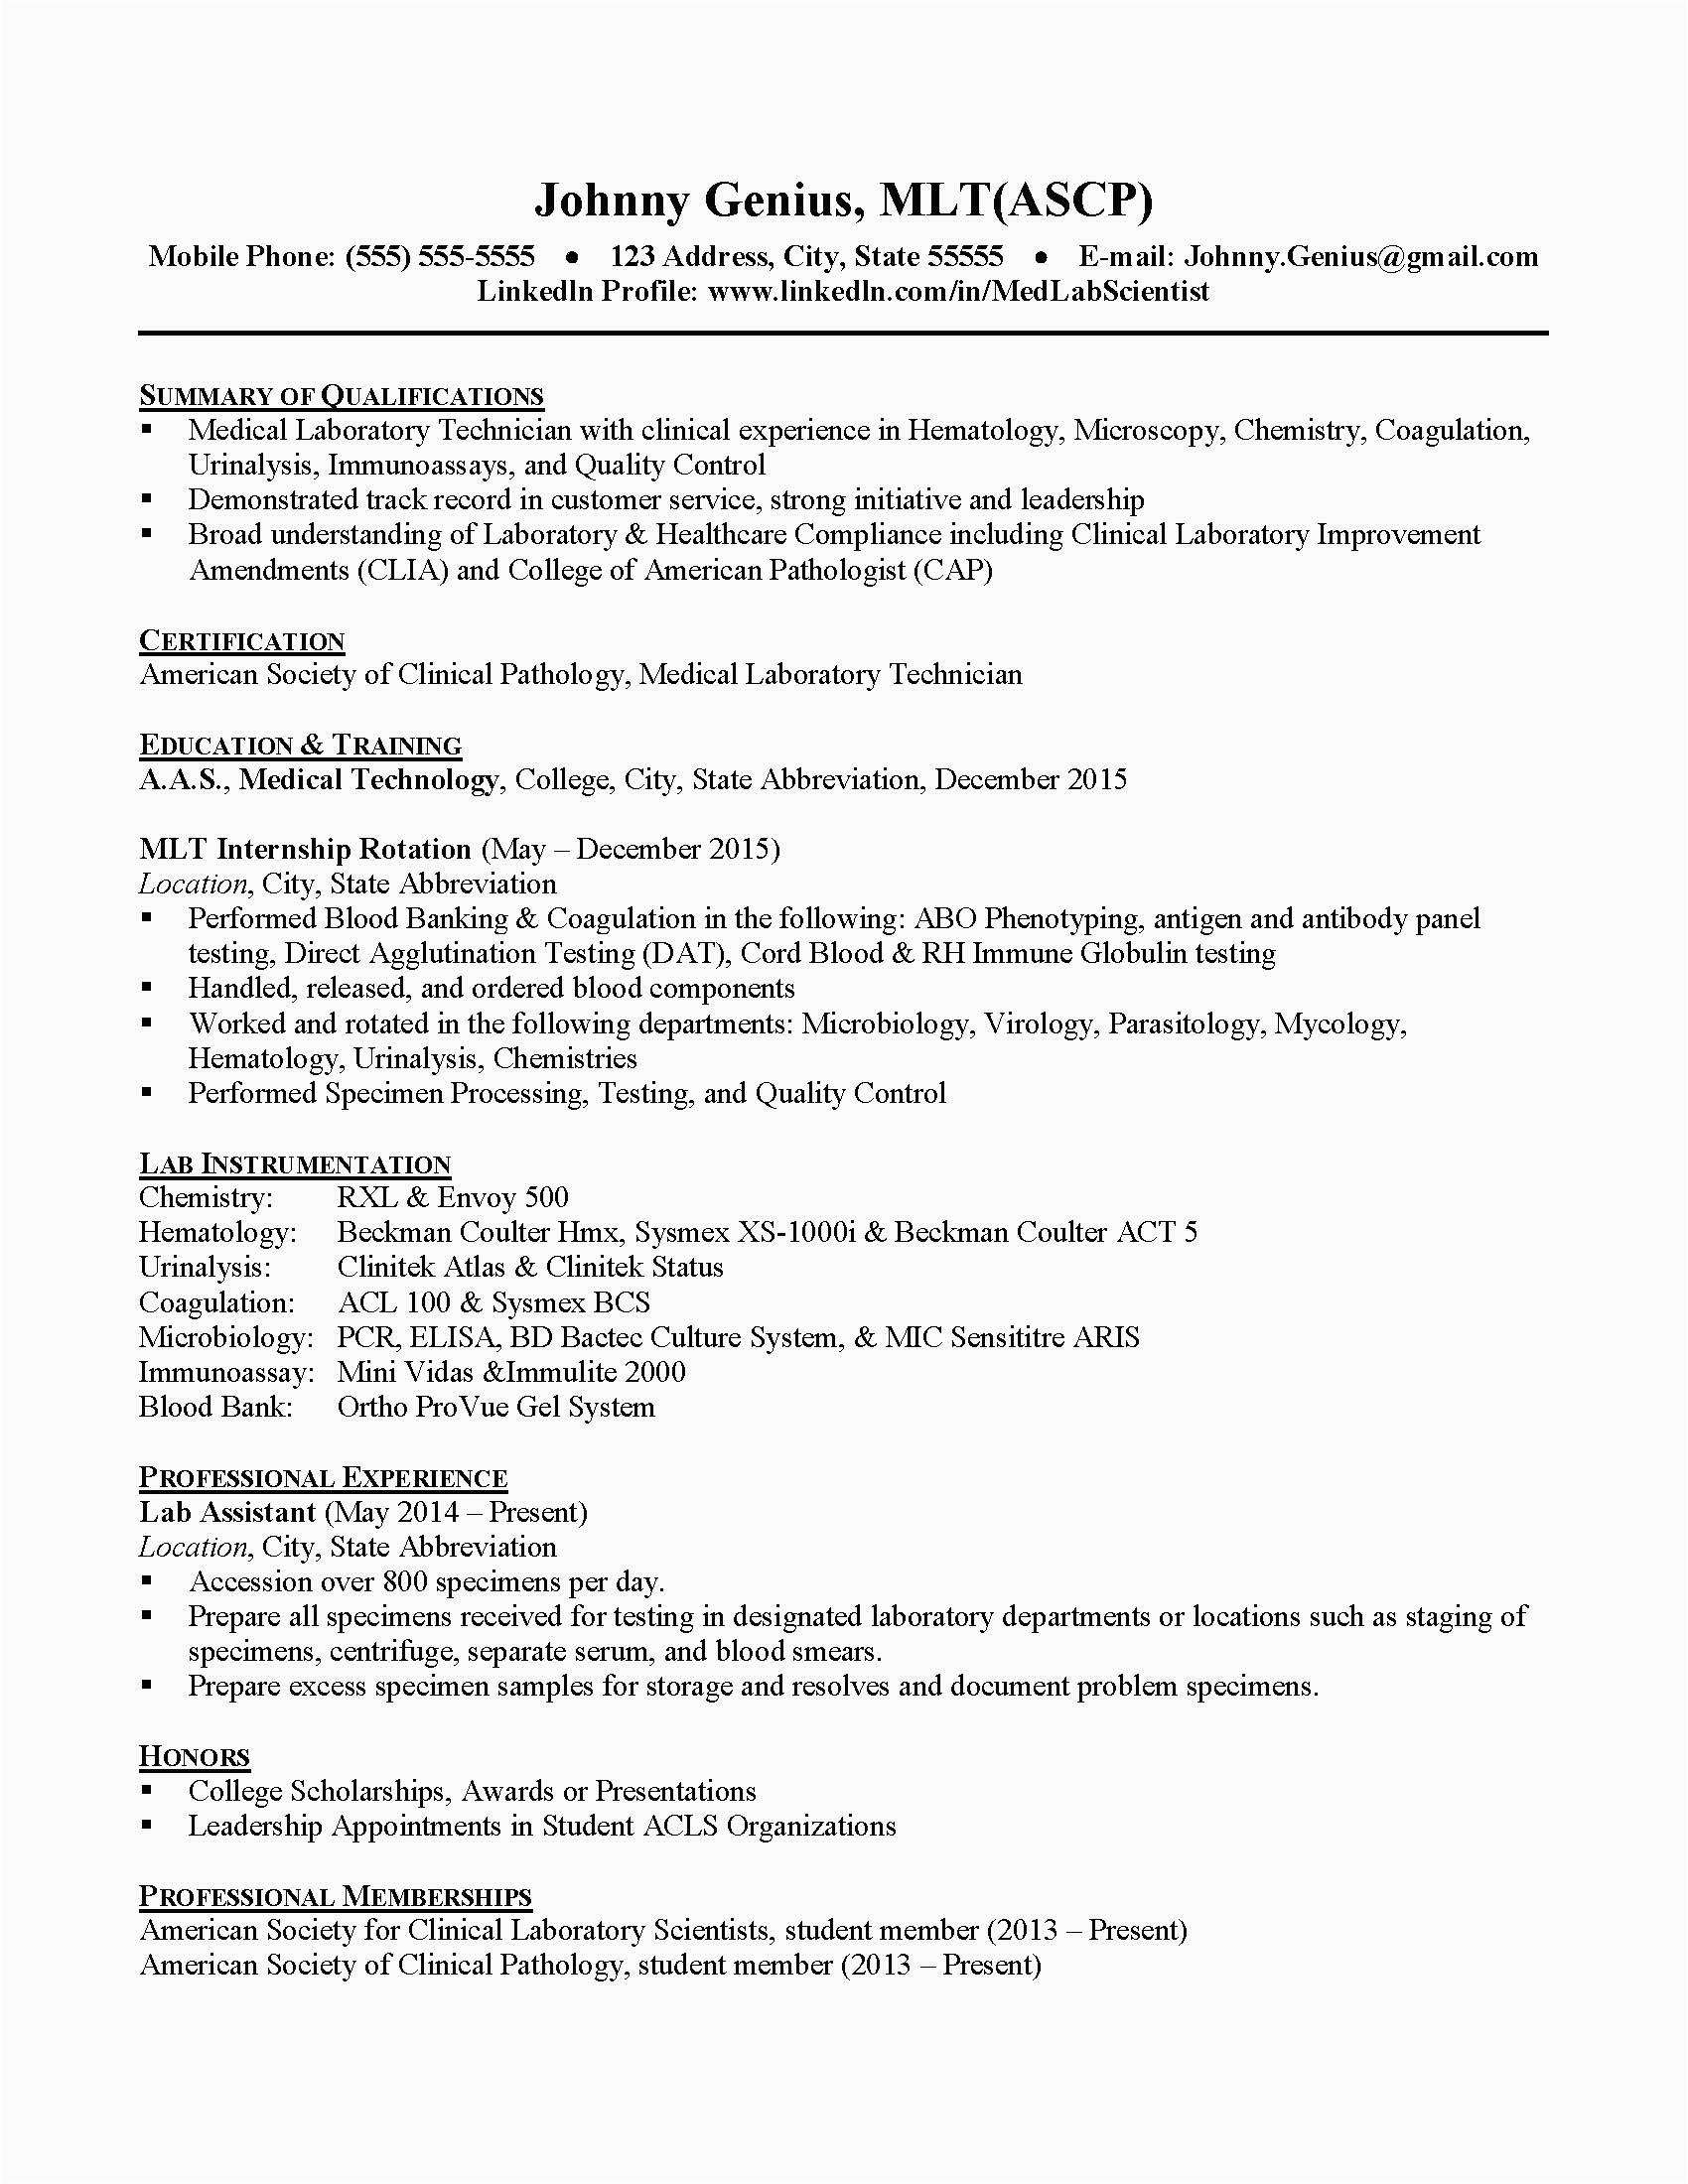 Sample Resume for Medical Technologist Fresh Graduate Philippines Medical Technology Sample Resume for Medical Technologist